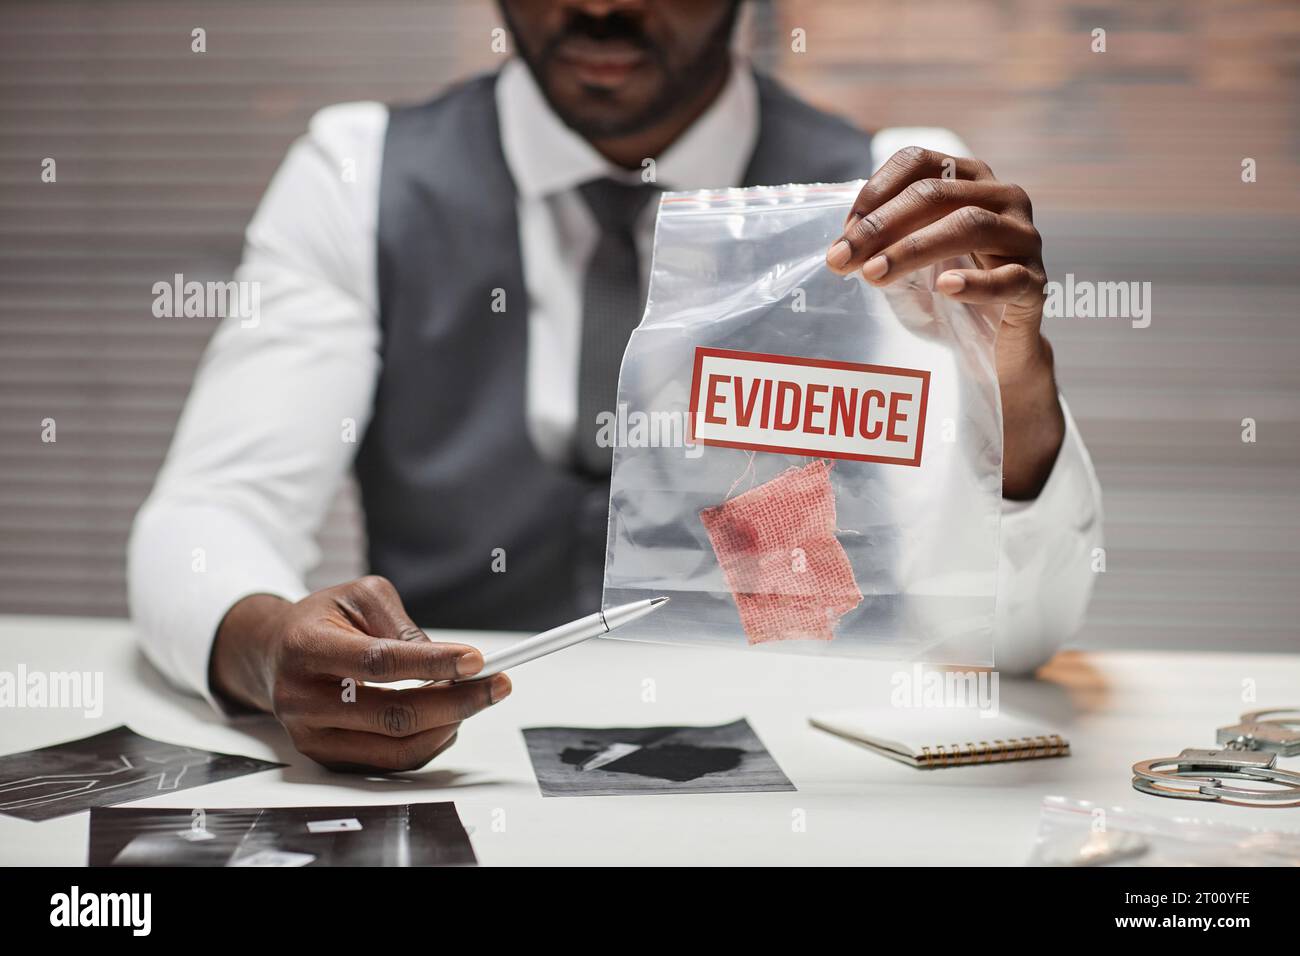 Nahaufnahme eines schwarzen männlichen Detektivs, der eine Plastiktüte mit Beweisen während des Verhörs des Verdächtigen hält, Kopierraum Stockfoto